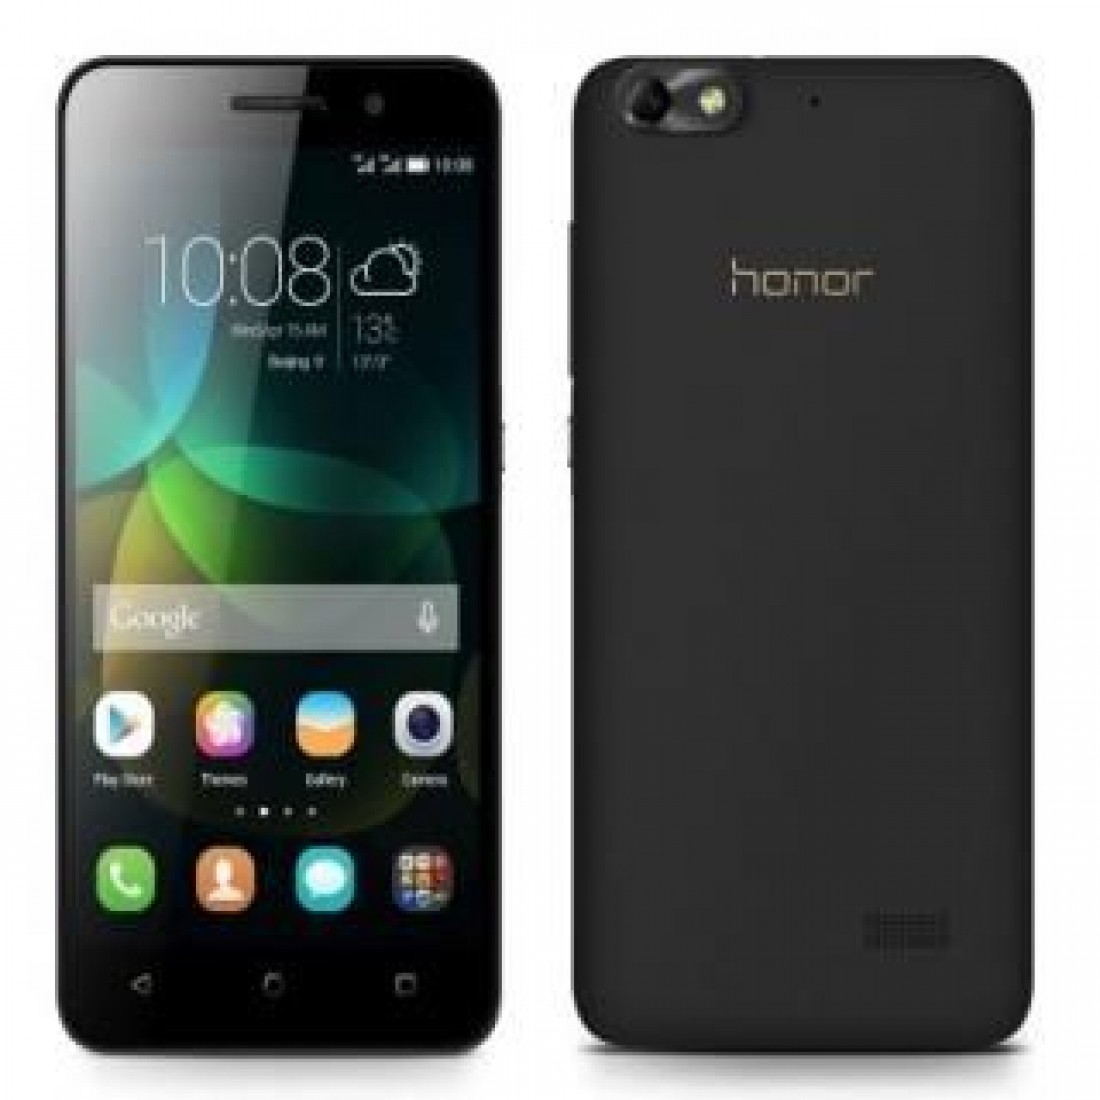 Honor xb. Huawei Honor 4c. Хуавей хонор 4с. Huawei Honor 4. Huawei Honor 4c White.